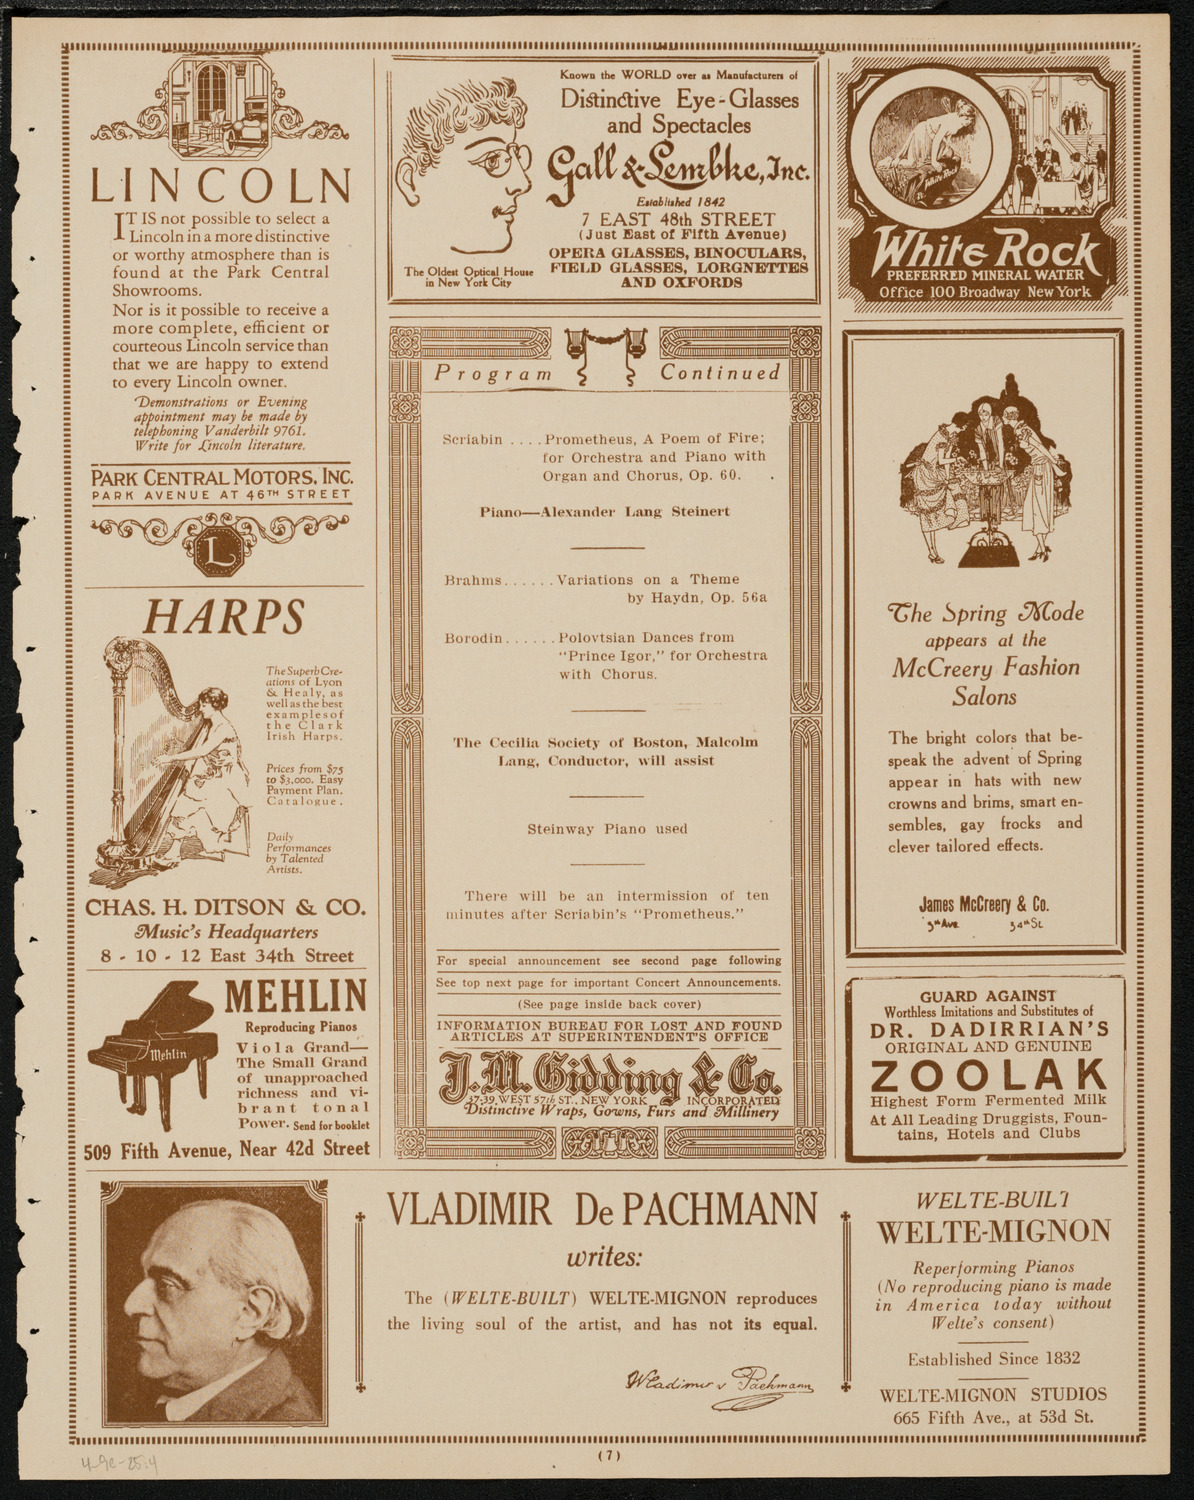 Boston Symphony Orchestra, April 9, 1925, program page 7